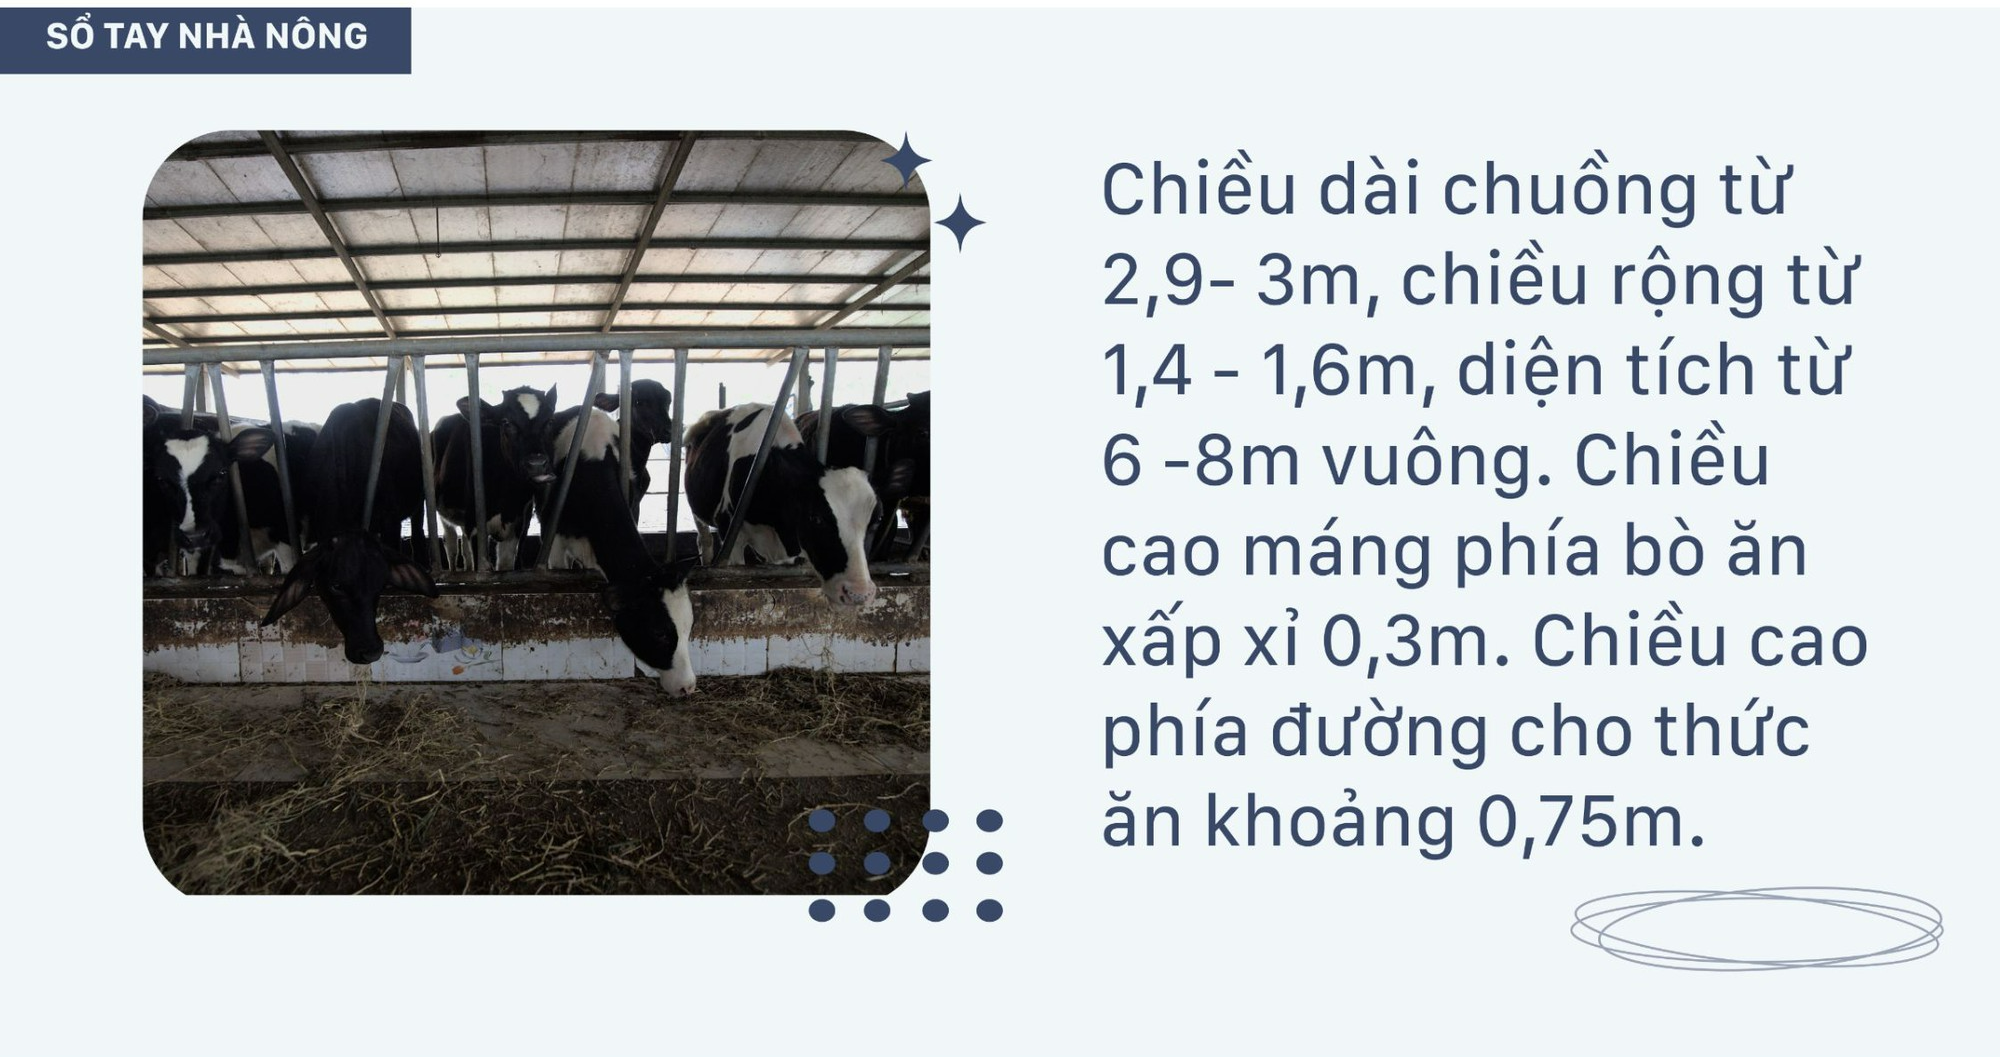 SỔ TAY NHÀ NÔNG: Hướng dẫn kỹ thuật làm chuồng nuôi bò sữa - Ảnh 1.